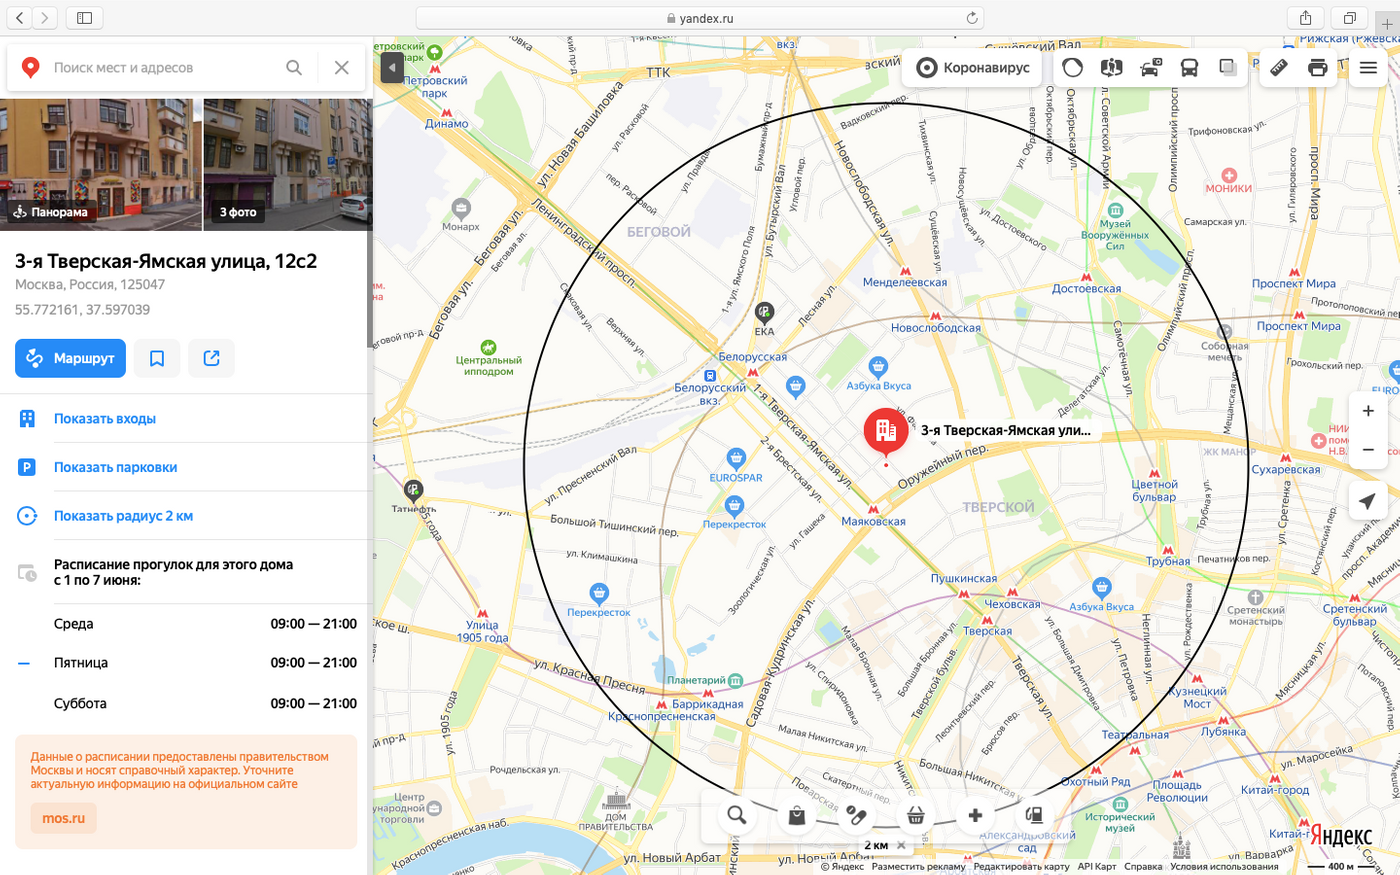 Точка на карте программа. Яндекс карты. Яндекс карты Москва. Карта Москвы Яндекс карты. Яндекс карты Яндекс карты.